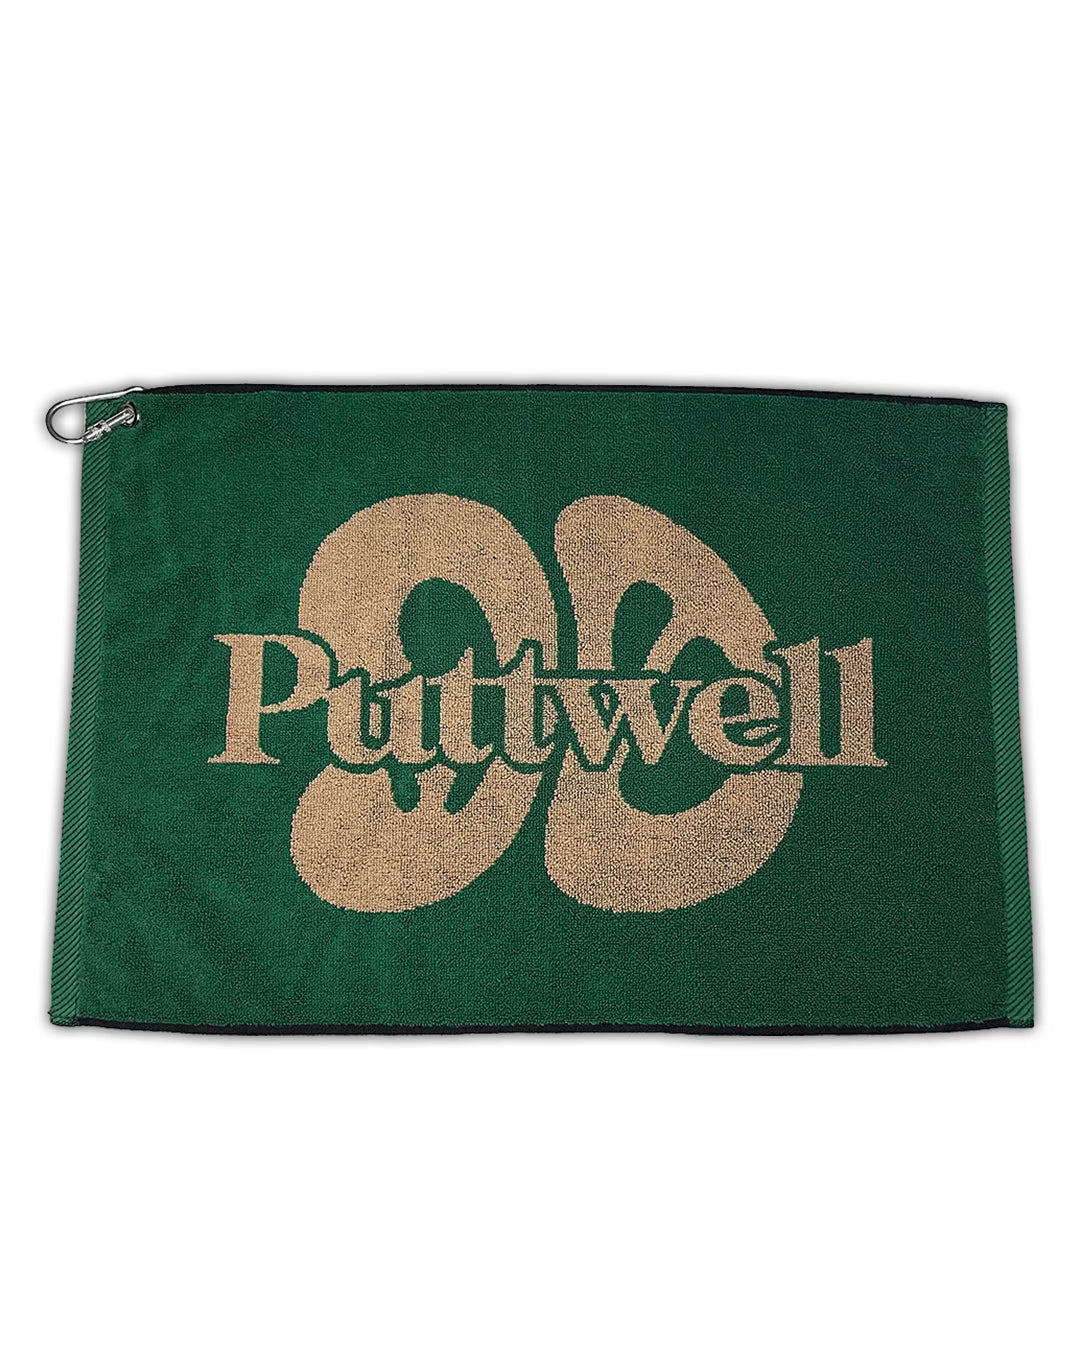 Mid 90s Club x Puttwell Towel & Ball Marker Set